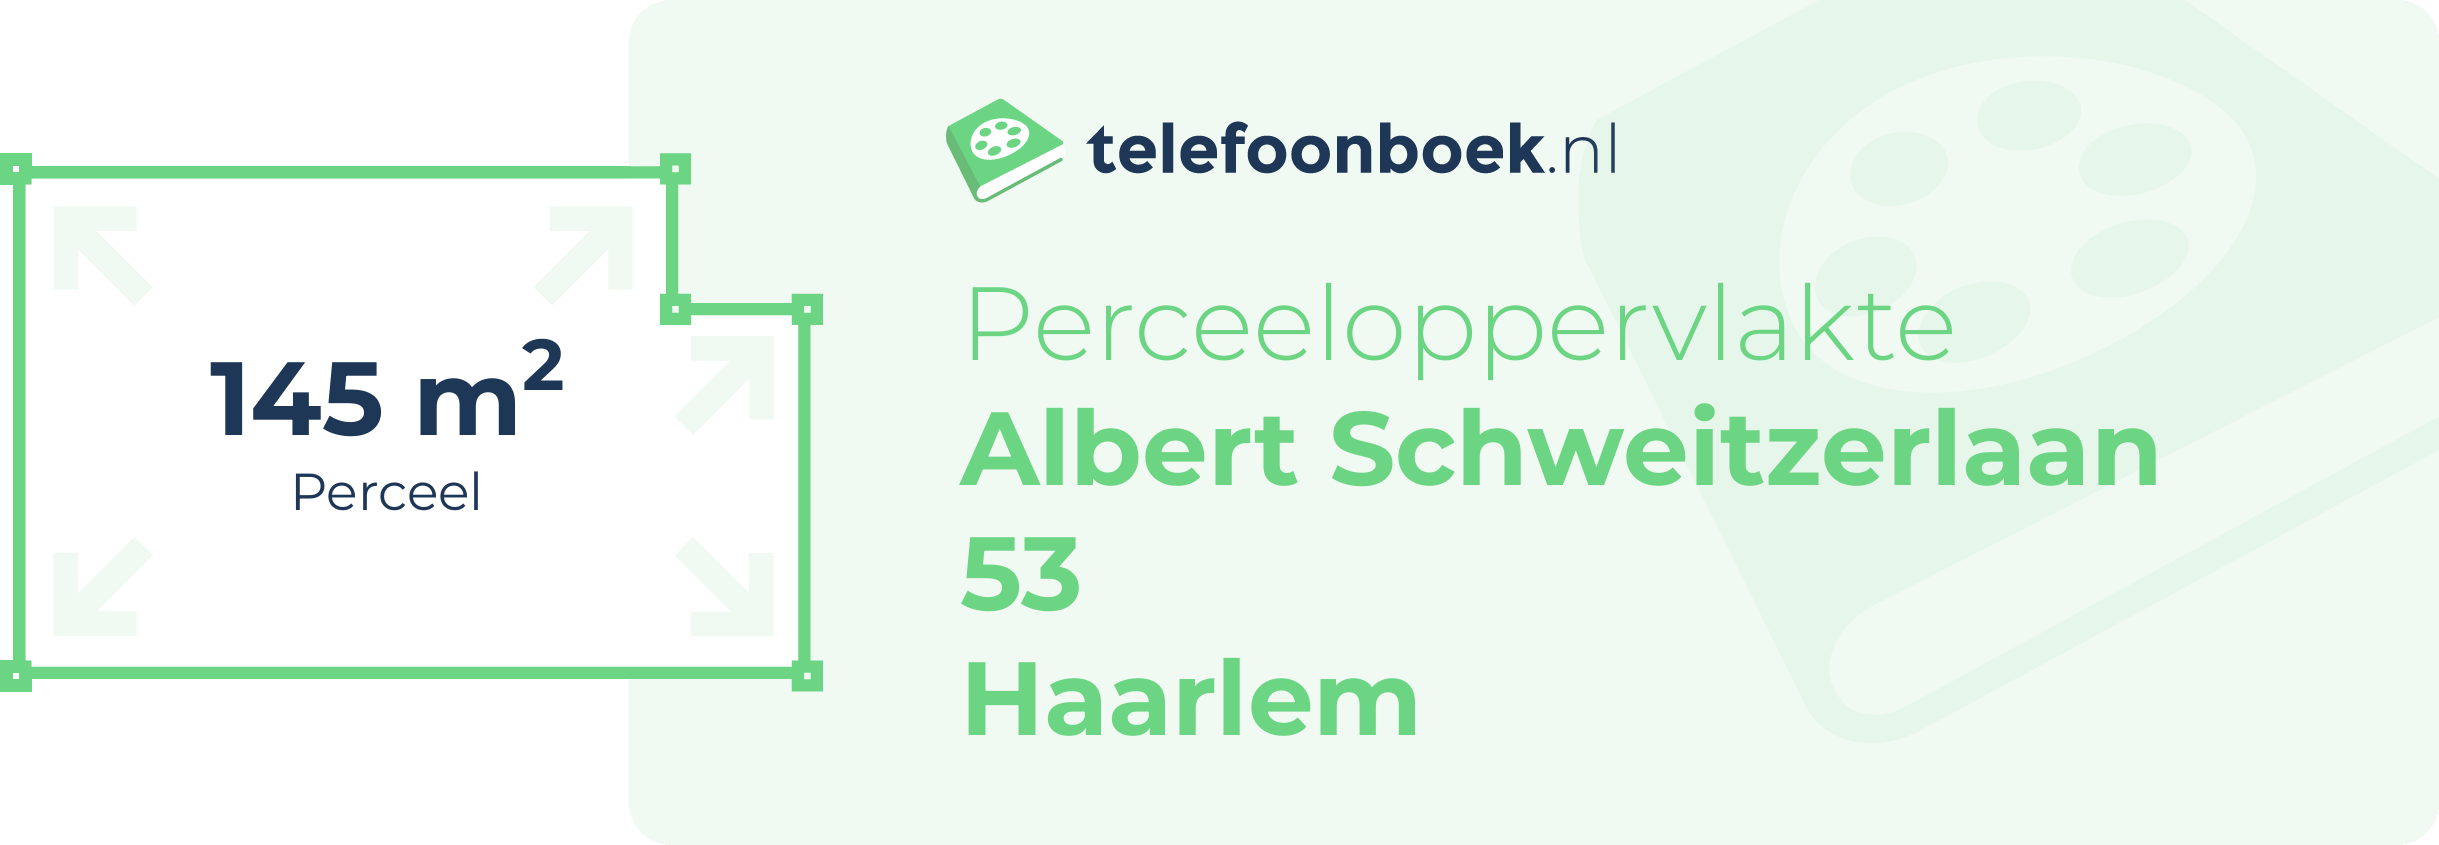 Perceeloppervlakte Albert Schweitzerlaan 53 Haarlem